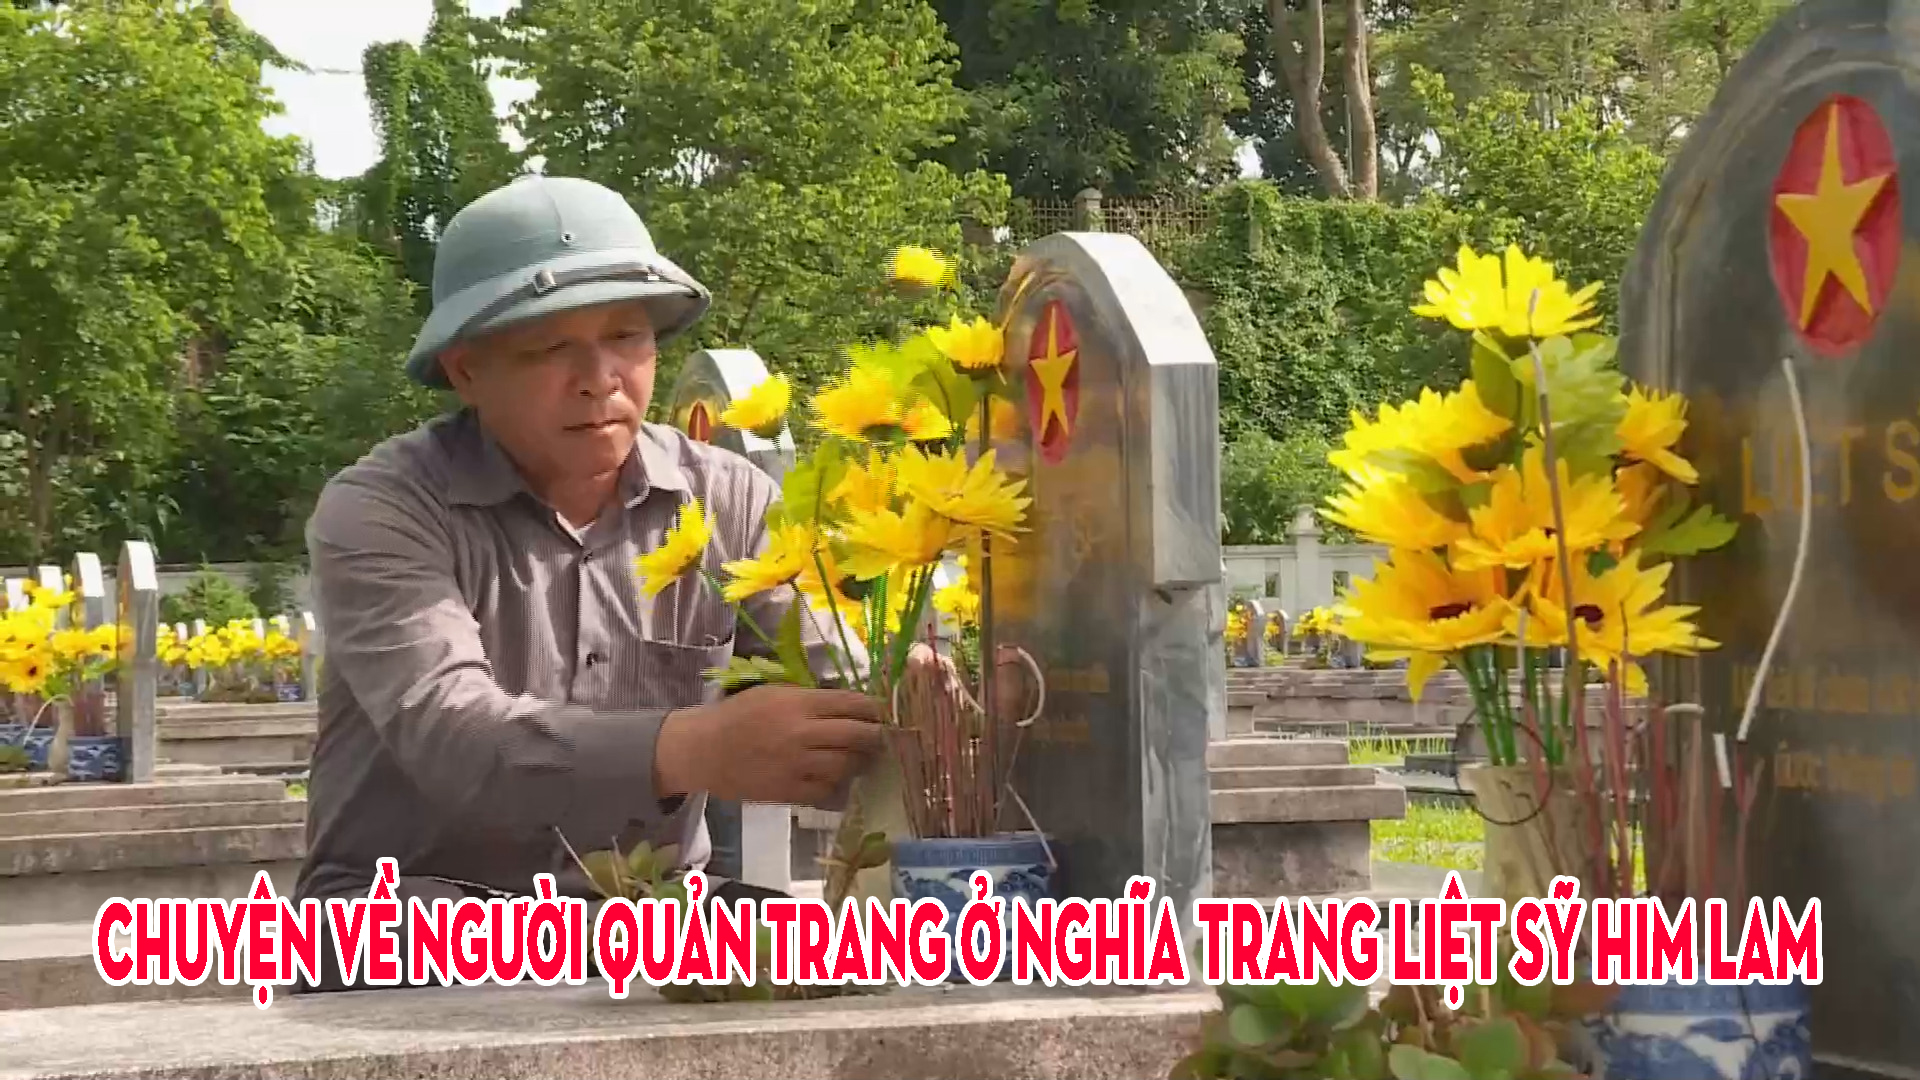 Chuyện về người quản trang ở Nghĩa trang Liệt sỹ Him Lam